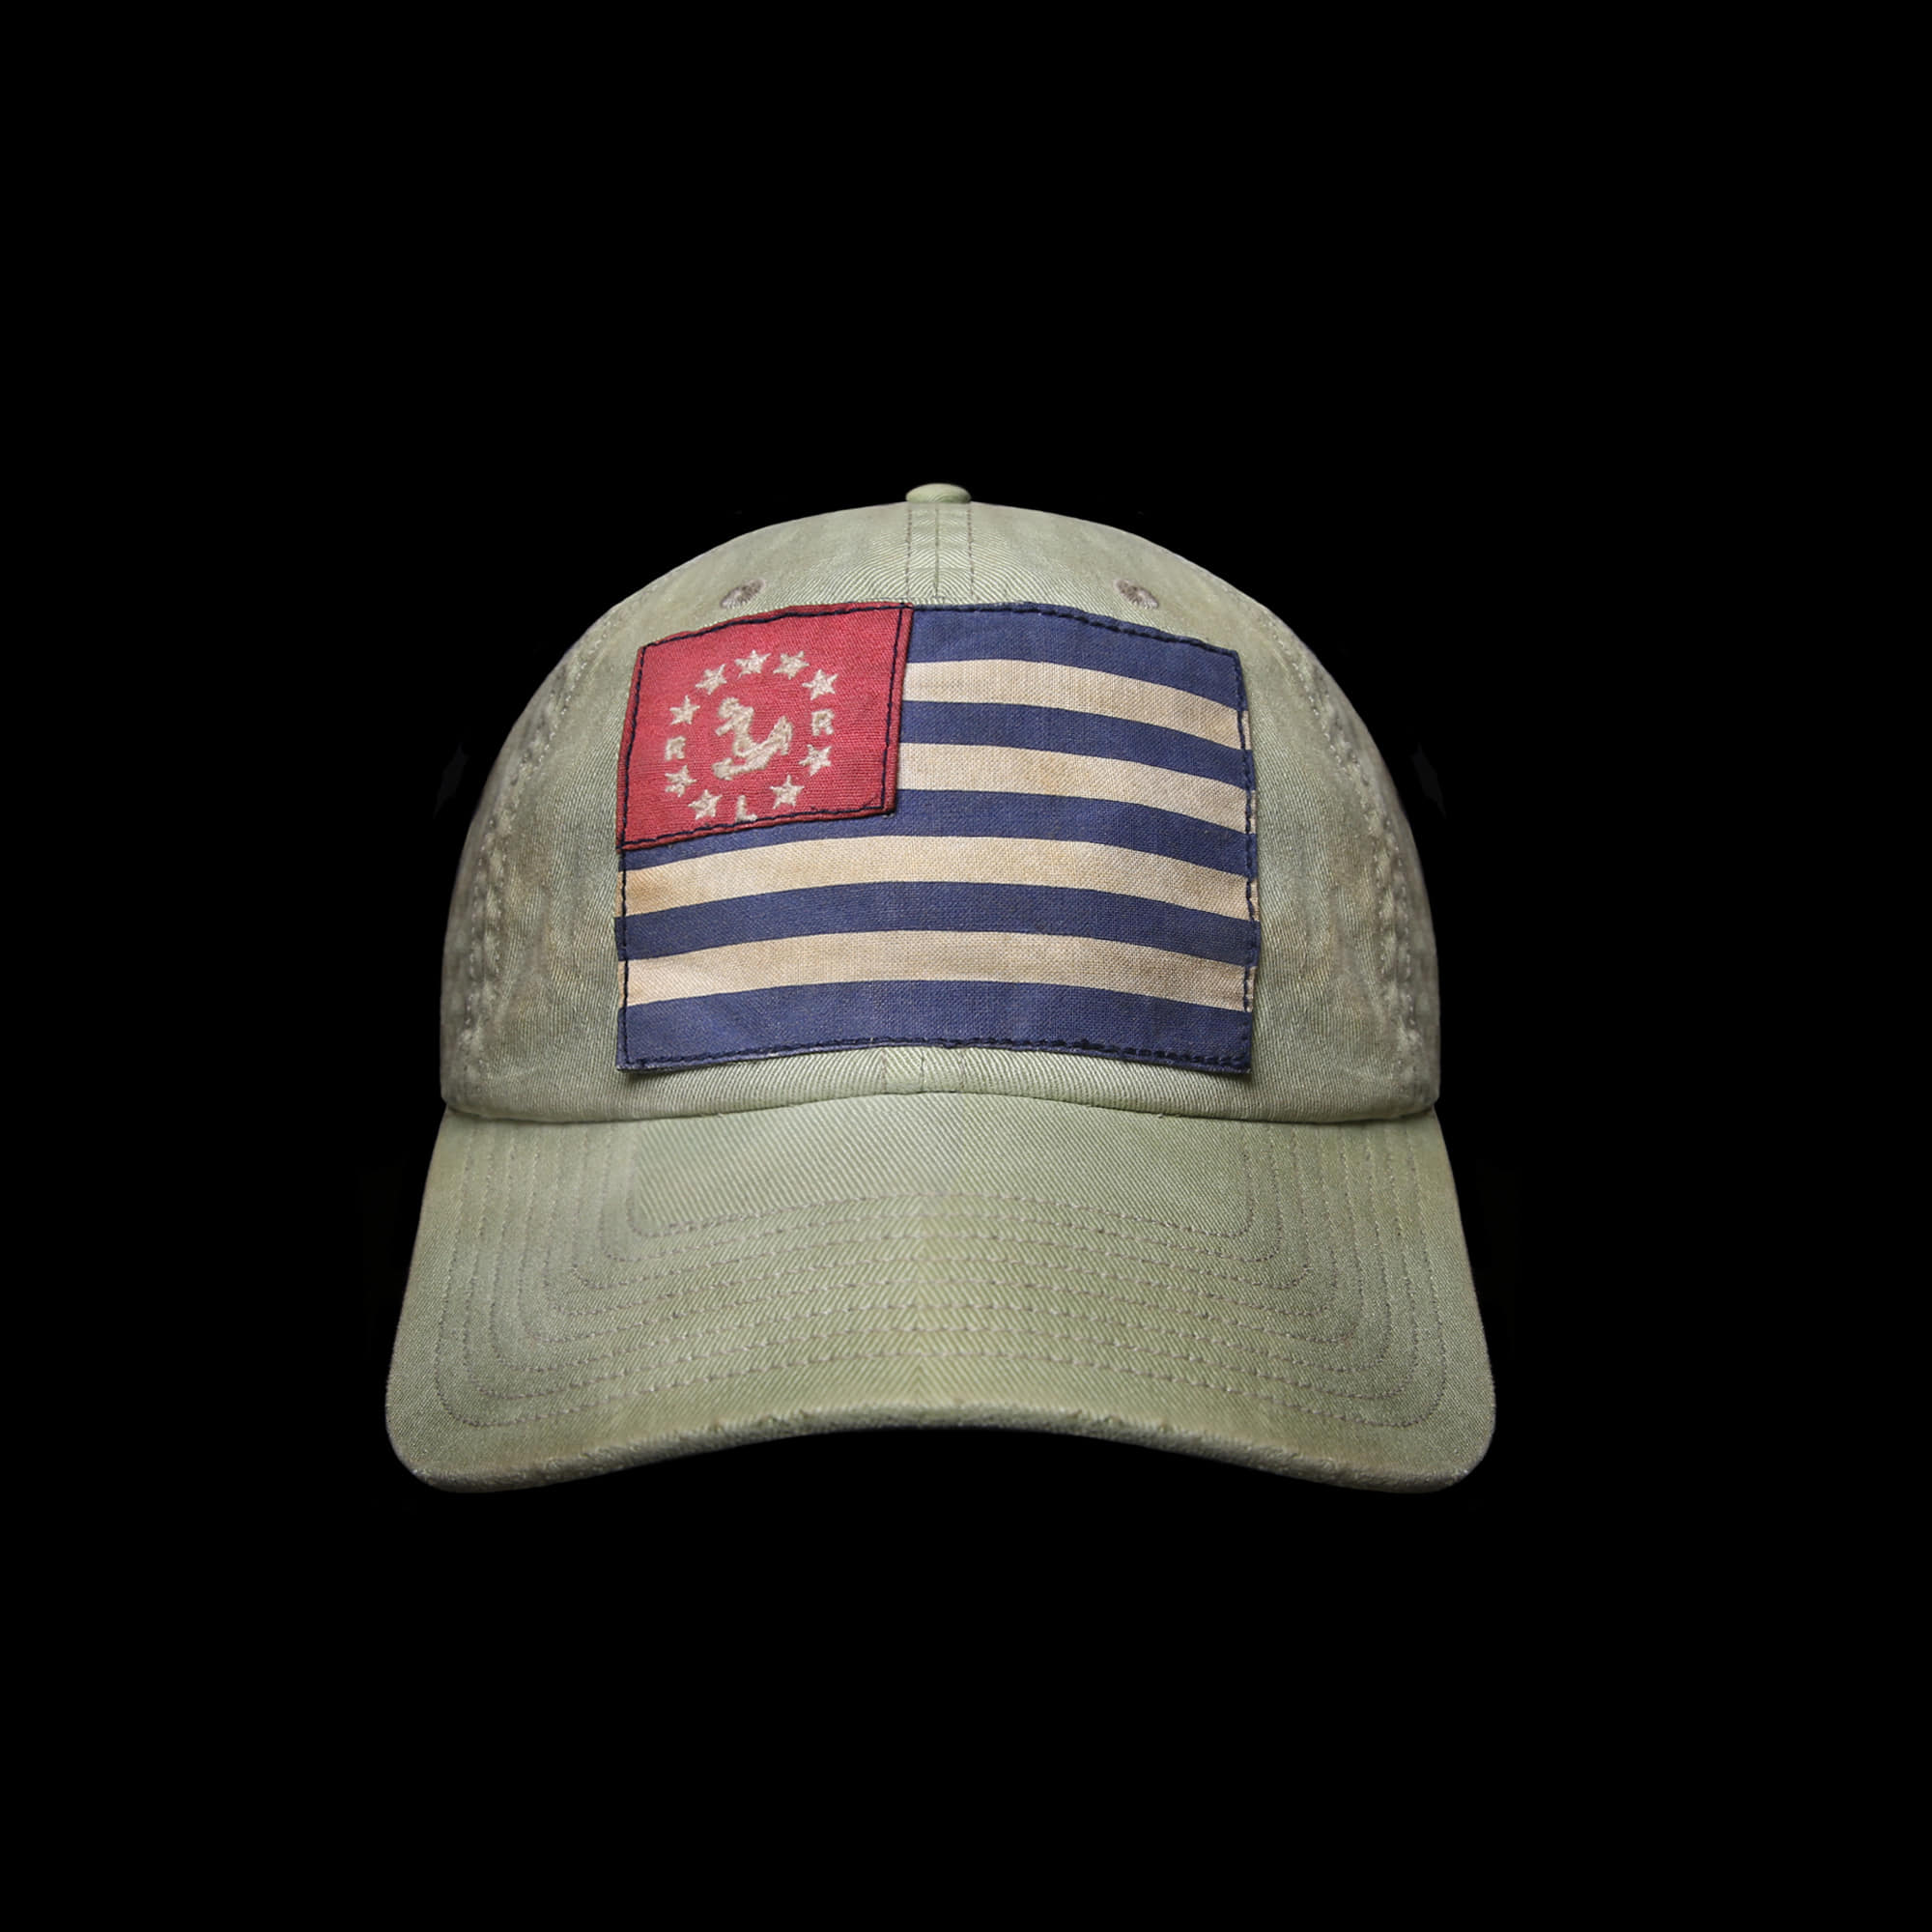 RRLWORK CAP